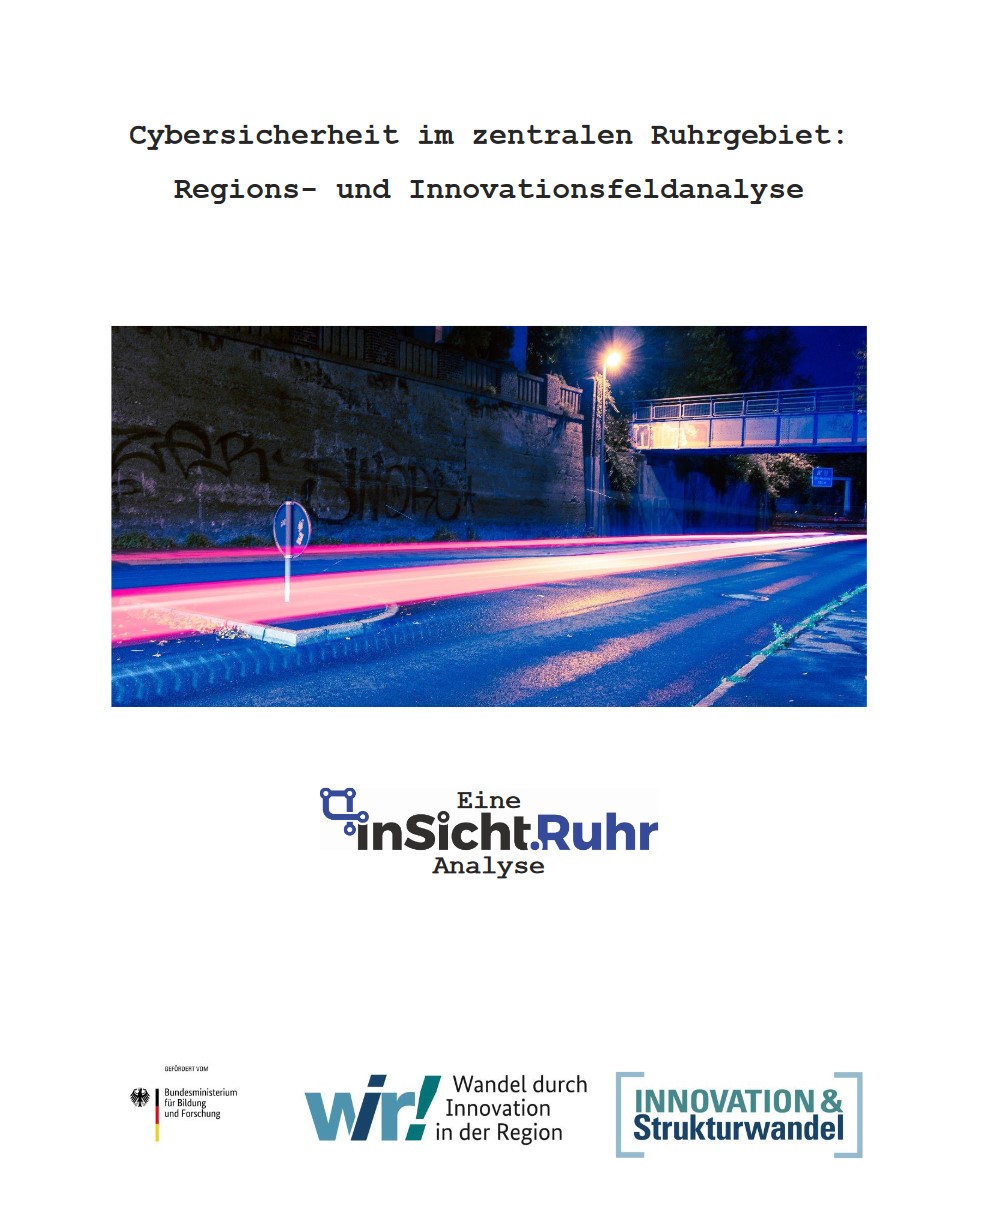 InSicht.Ruhr - Cybersecurity als Innovationstreiber für die Region